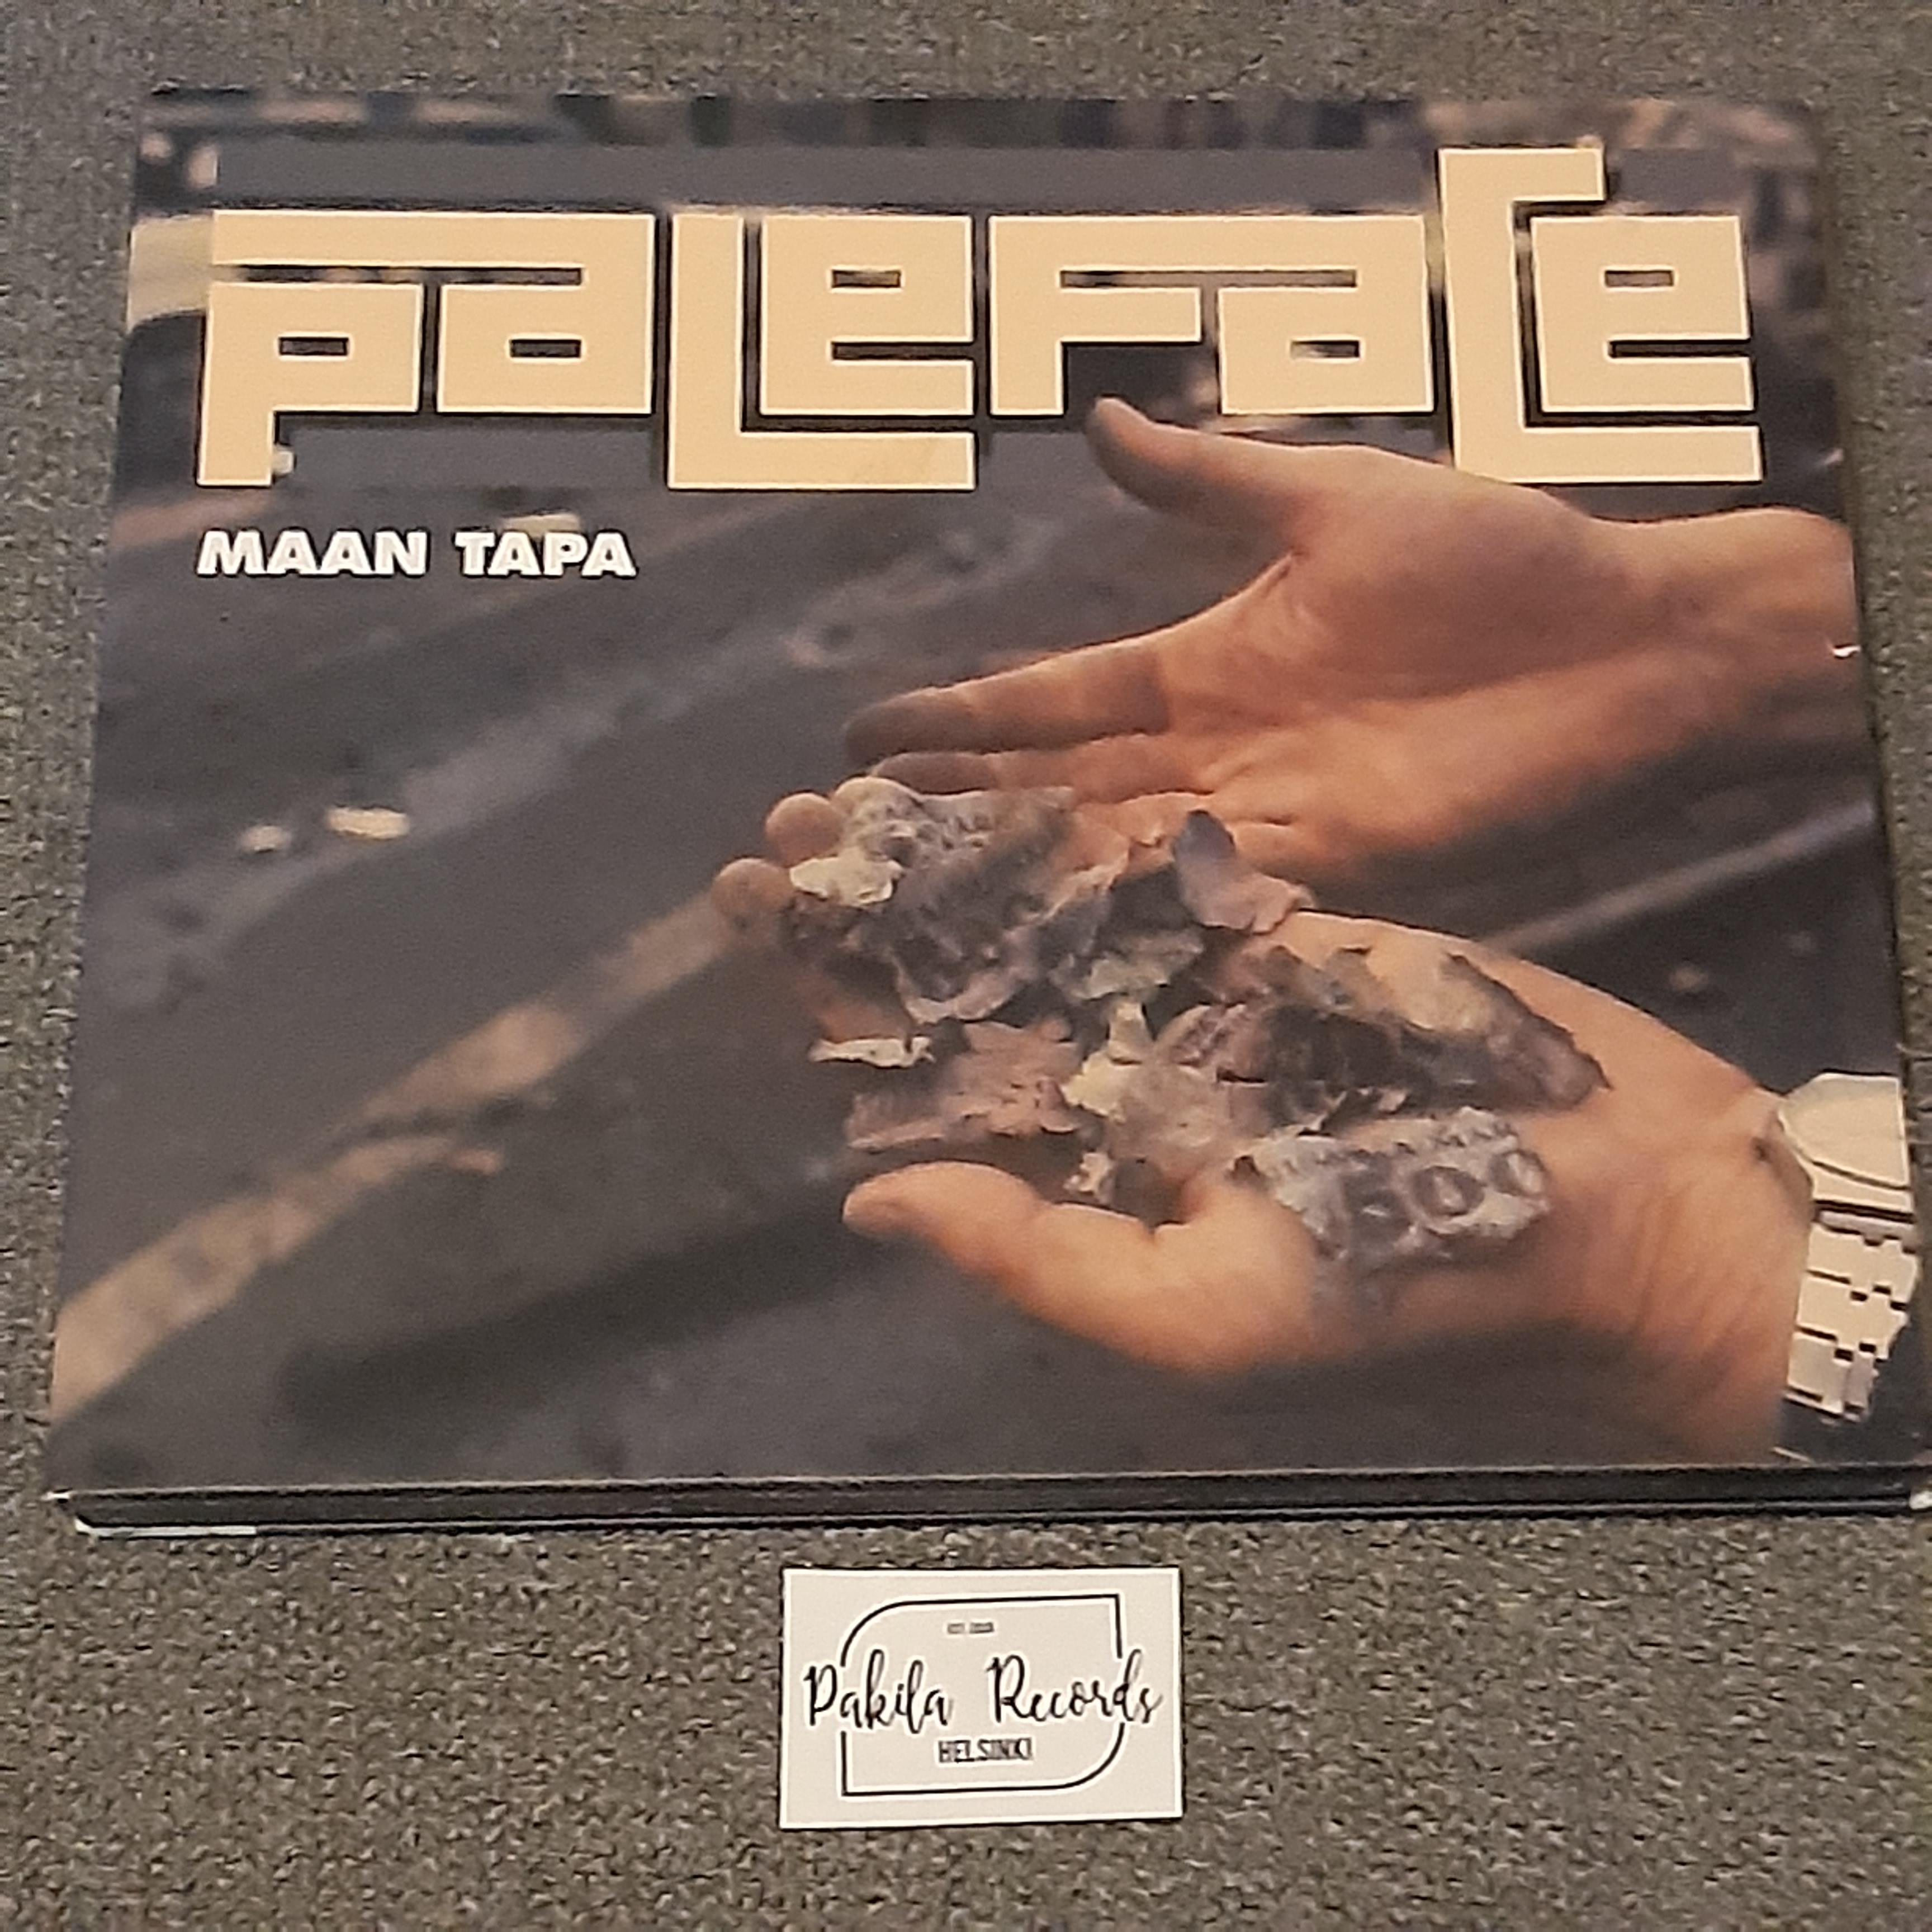 Paleface - Maan tapa - CD (käytetty)